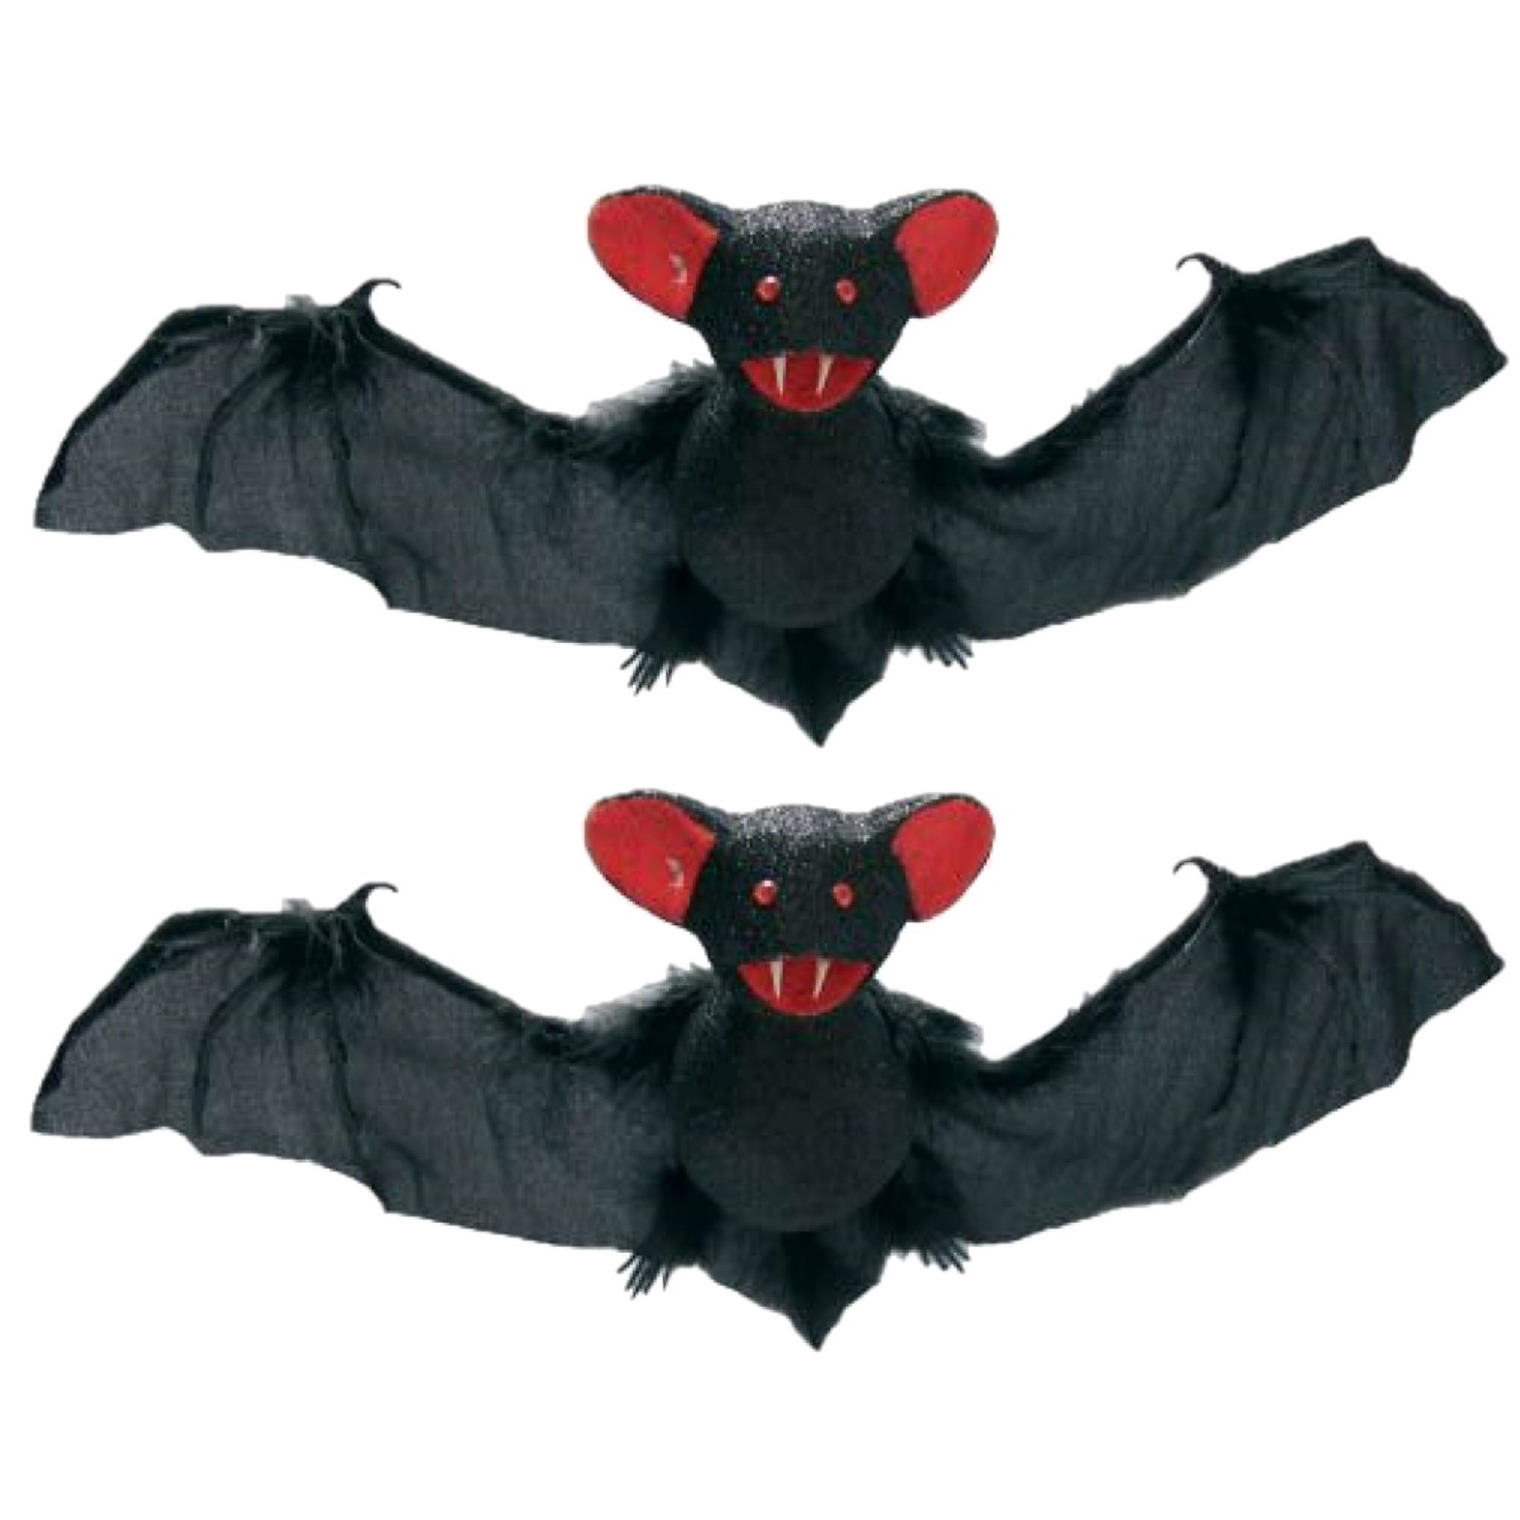 Afbeelding 2x stuks halloween decoratieve vleermuizen 39 cm door Animals Giftshop